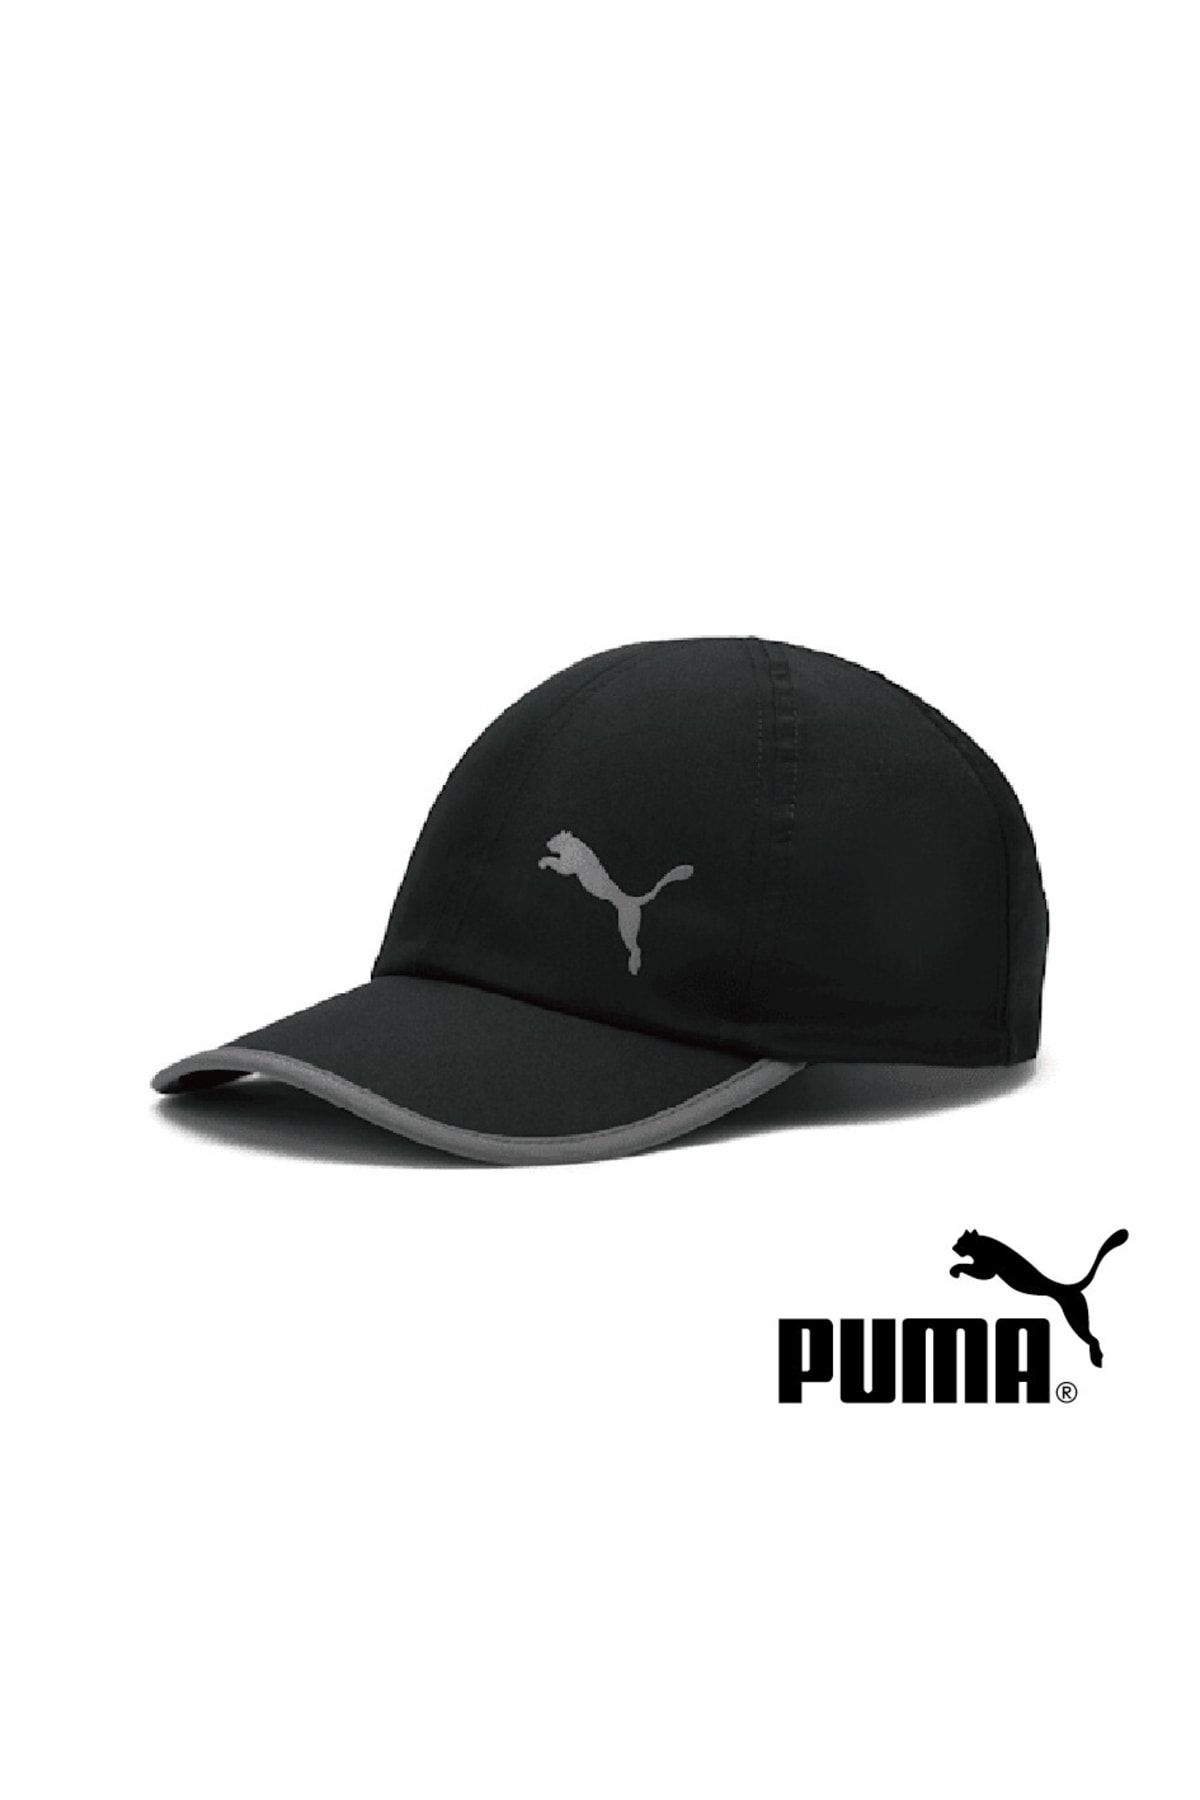 Puma Ess Running Cap Şapka Unisex Şapka 022325-02 Siyah